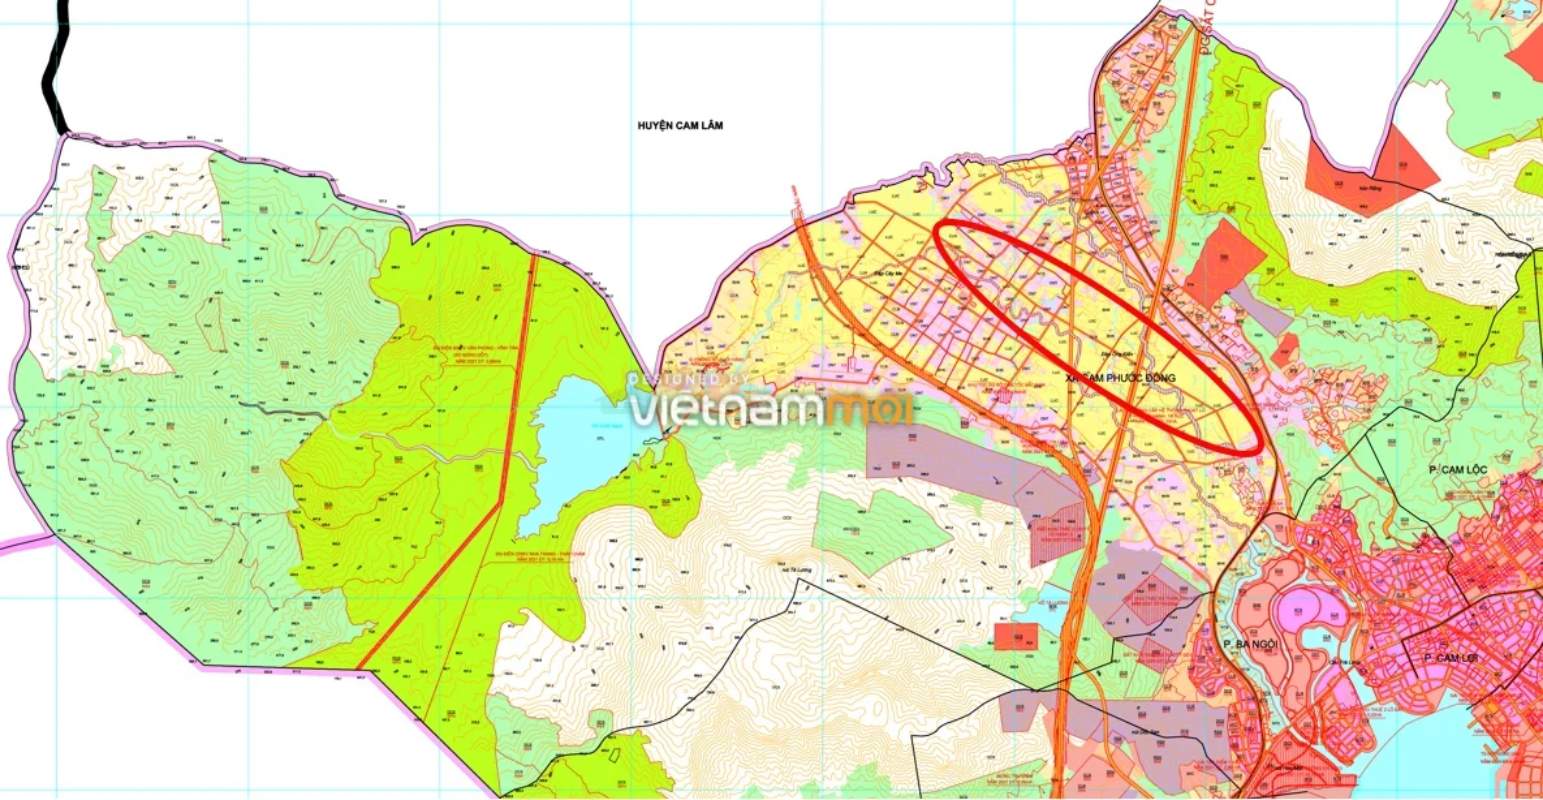 Phường Cam Phước Đông , TP Cam Ranh trên bản đồ kế hoạch sử dụng đất năm 2021. Ví dụ, trong khoanh tròn màu đỏ có một đường giao thông được quy hoạch. Đây chính là đường sẽ mở: đường Đồng Lác Sâu nối với đường gần Tạp hóa cô Hà.